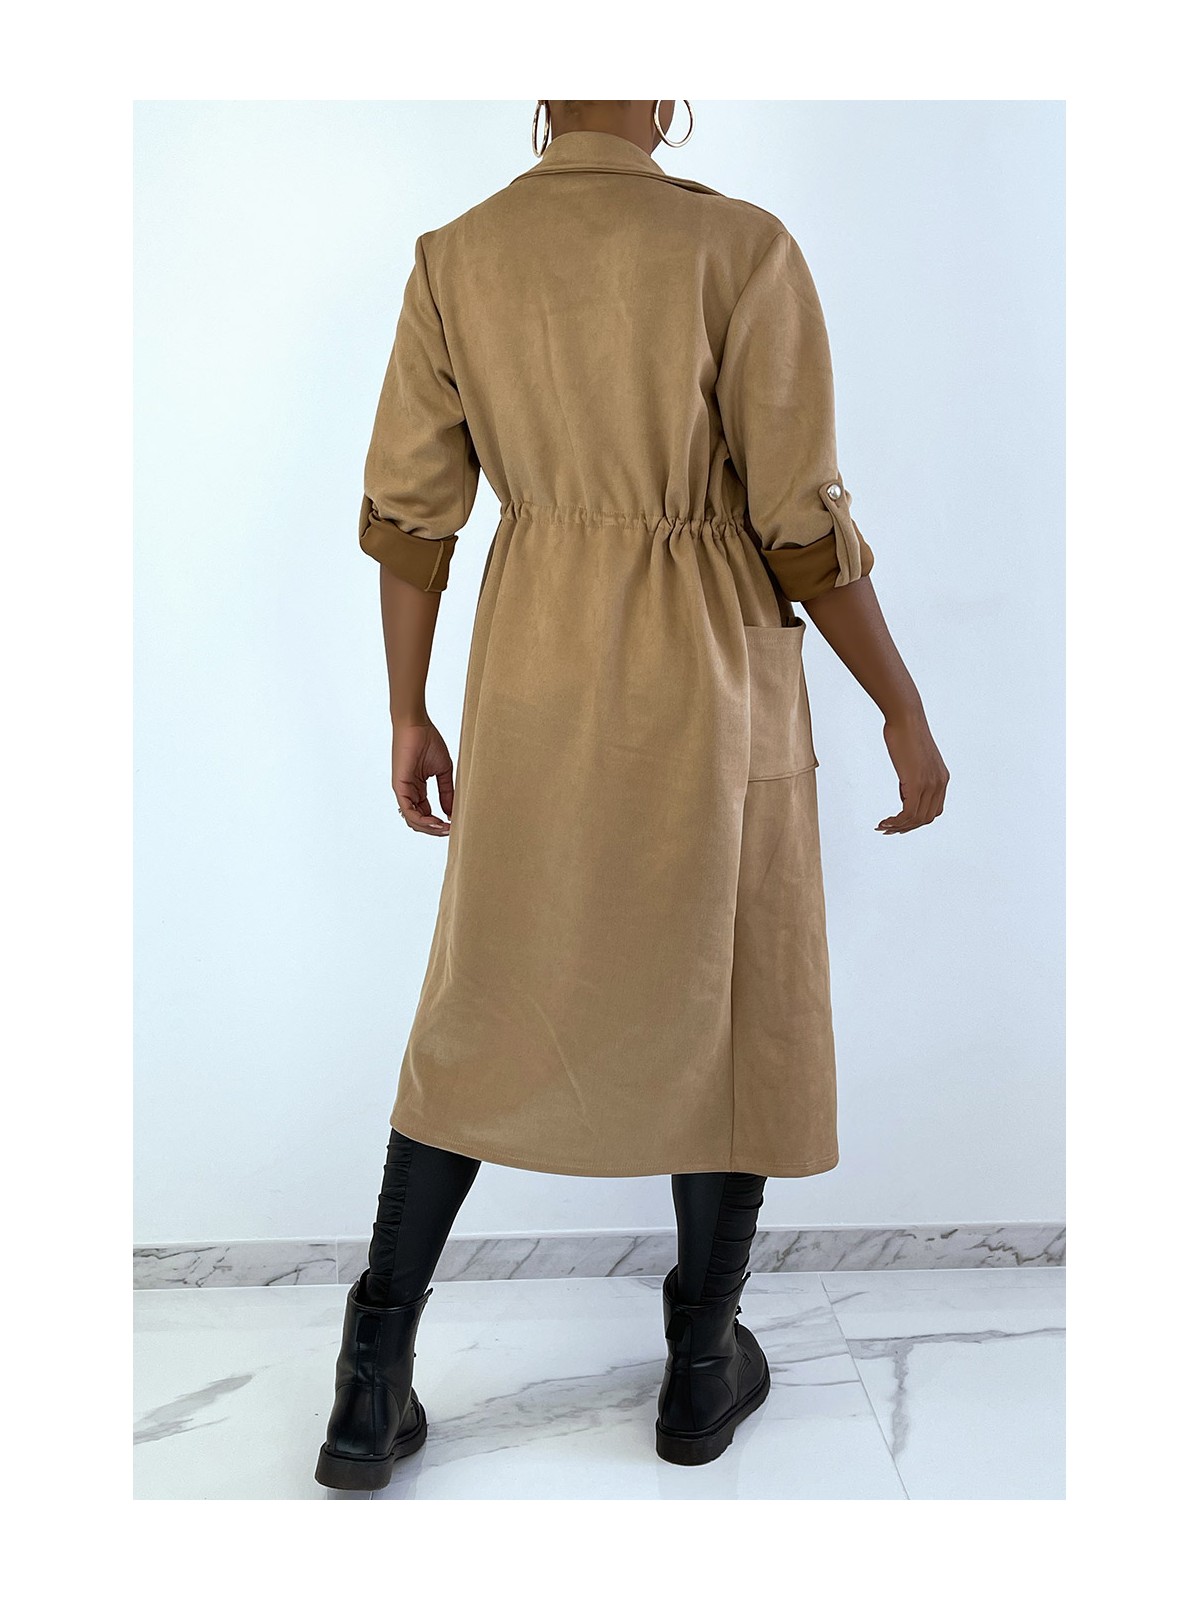 Manteau trench en suédine camel ajustable à la taille - 5